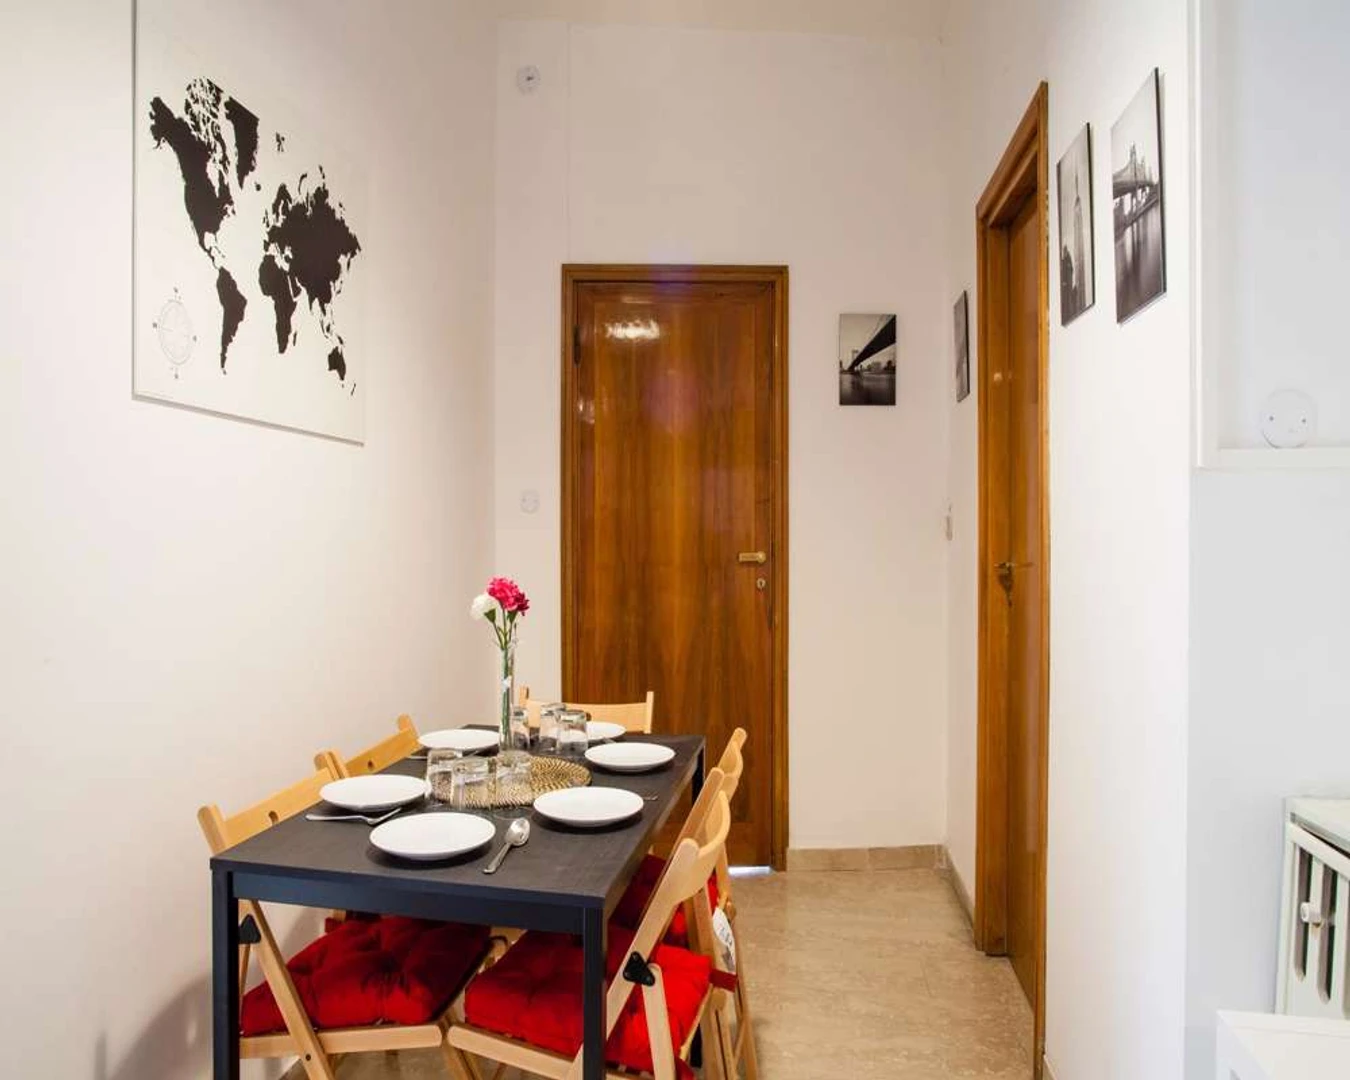 Pokój do wynajęcia we wspólnym mieszkaniu w Bolonia